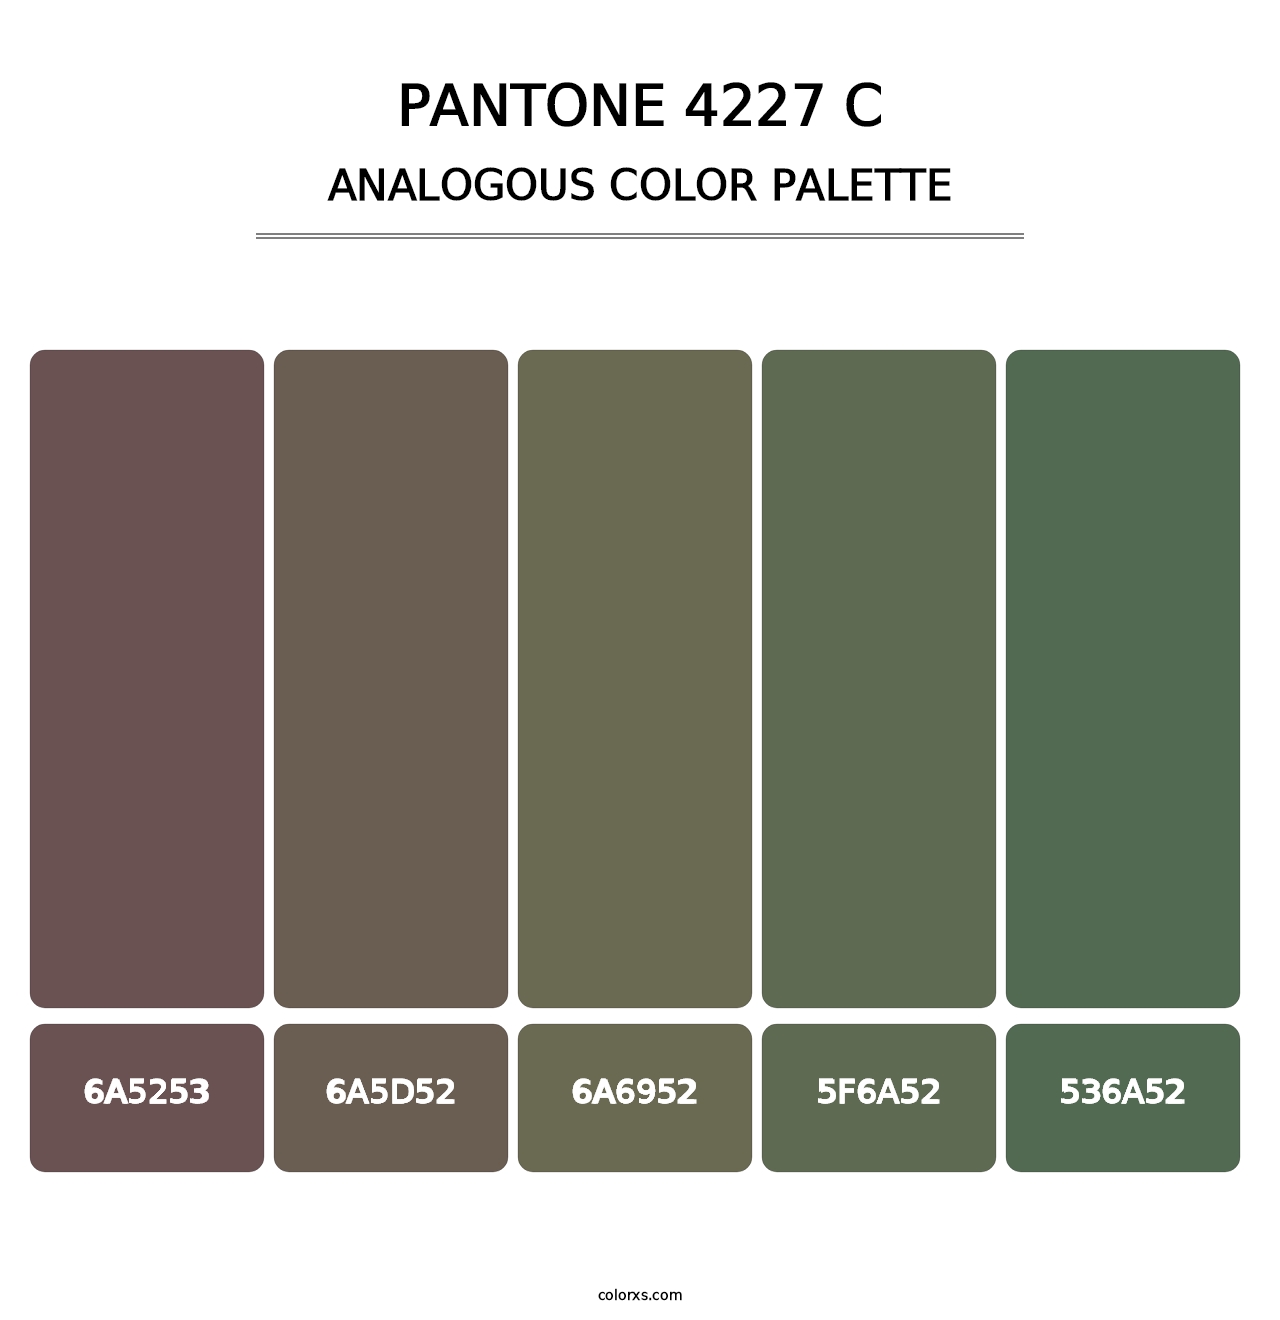 PANTONE 4227 C - Analogous Color Palette